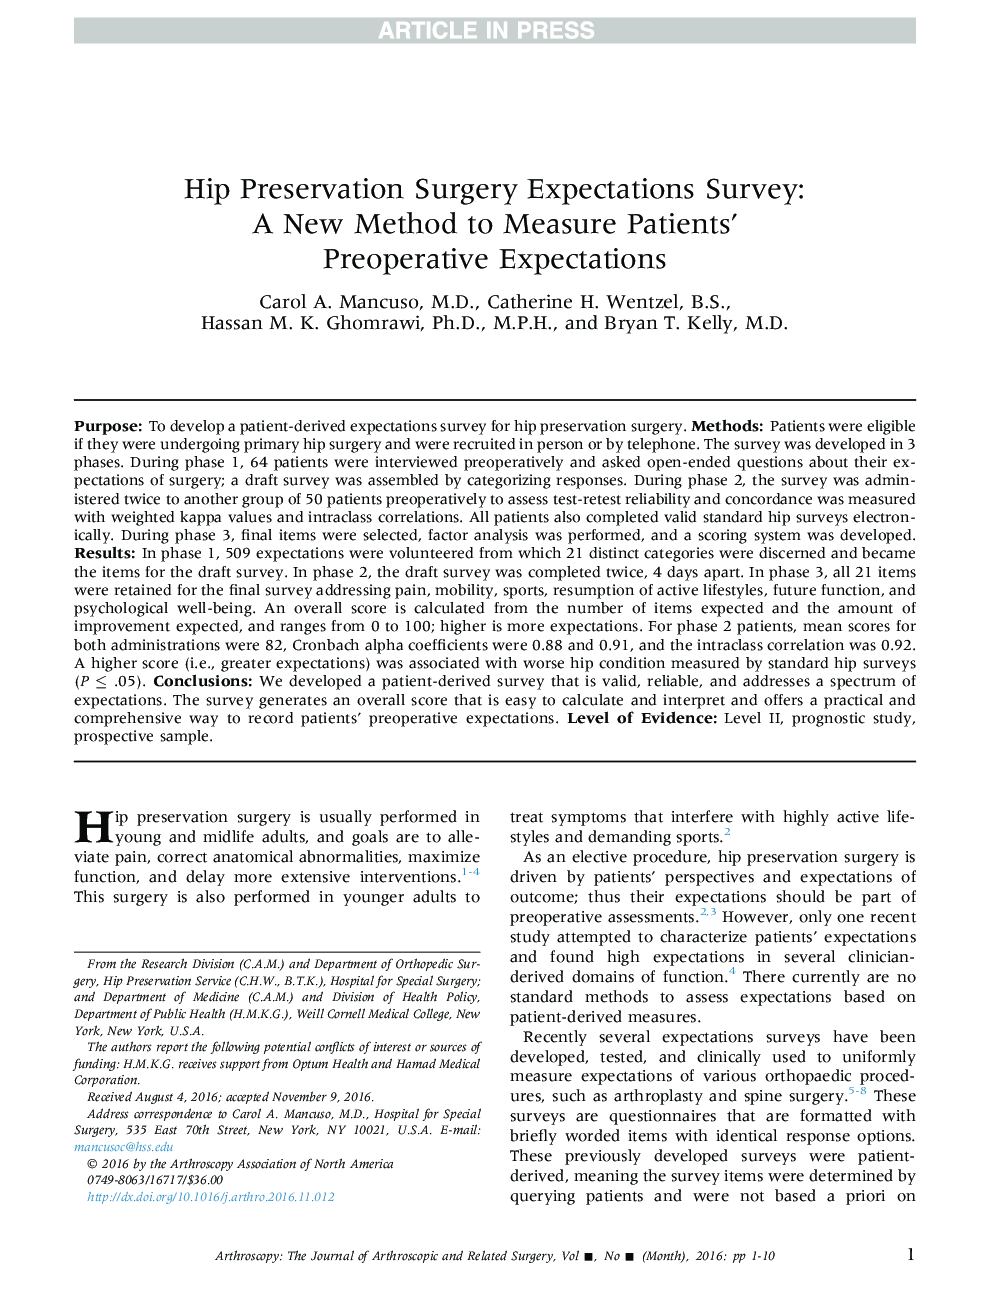 نظرسنجی انتظارات جراحی زیبایی جراحی: یک روش جدید برای سنجش انتظارات پیش از عمل جراحی بیماران 